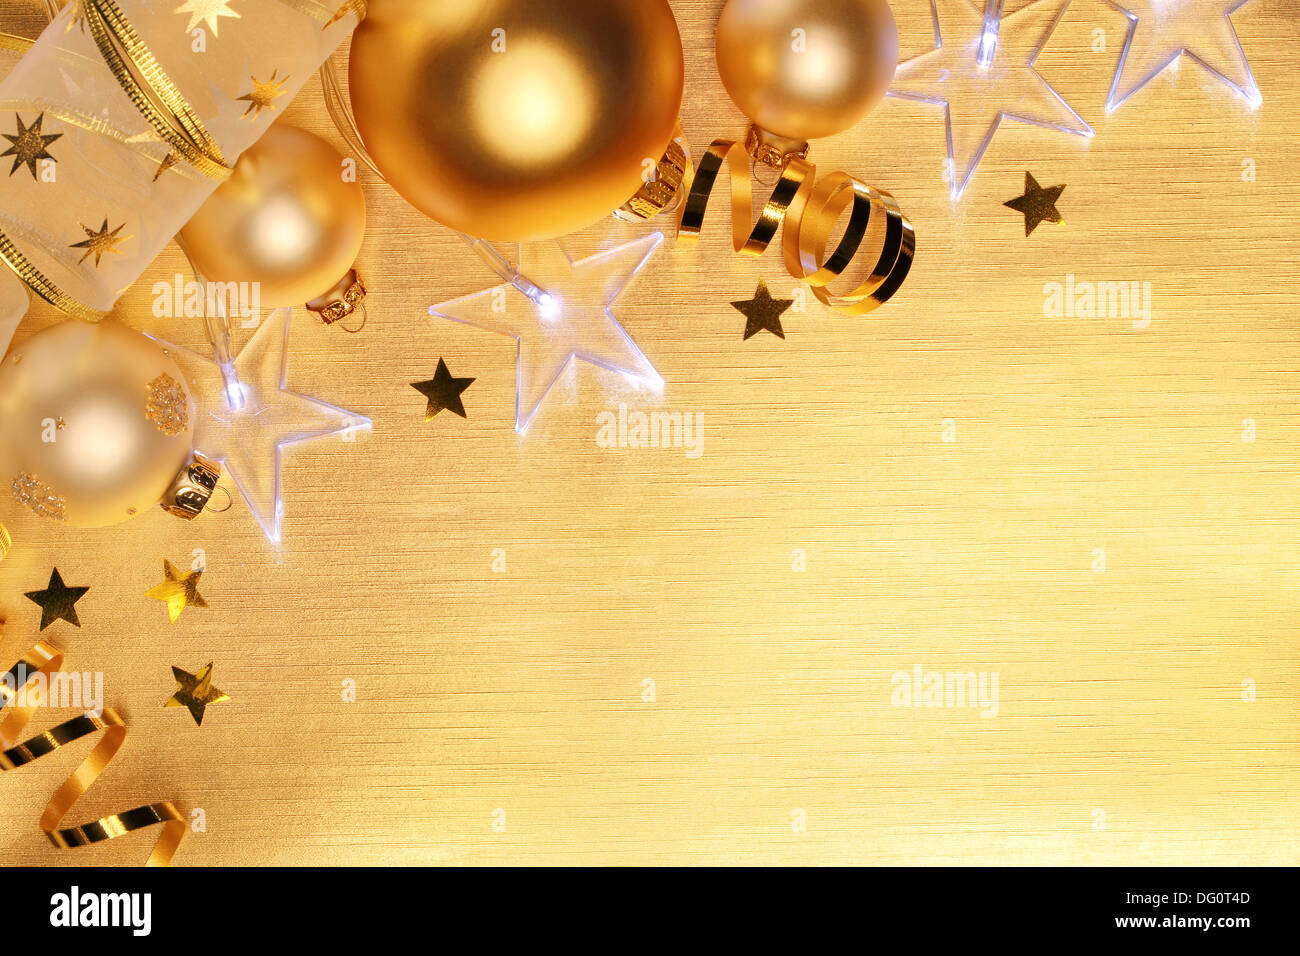 Weihnachtskugeln und Sterne leuchten auf goldenem Hintergrund Stockfoto